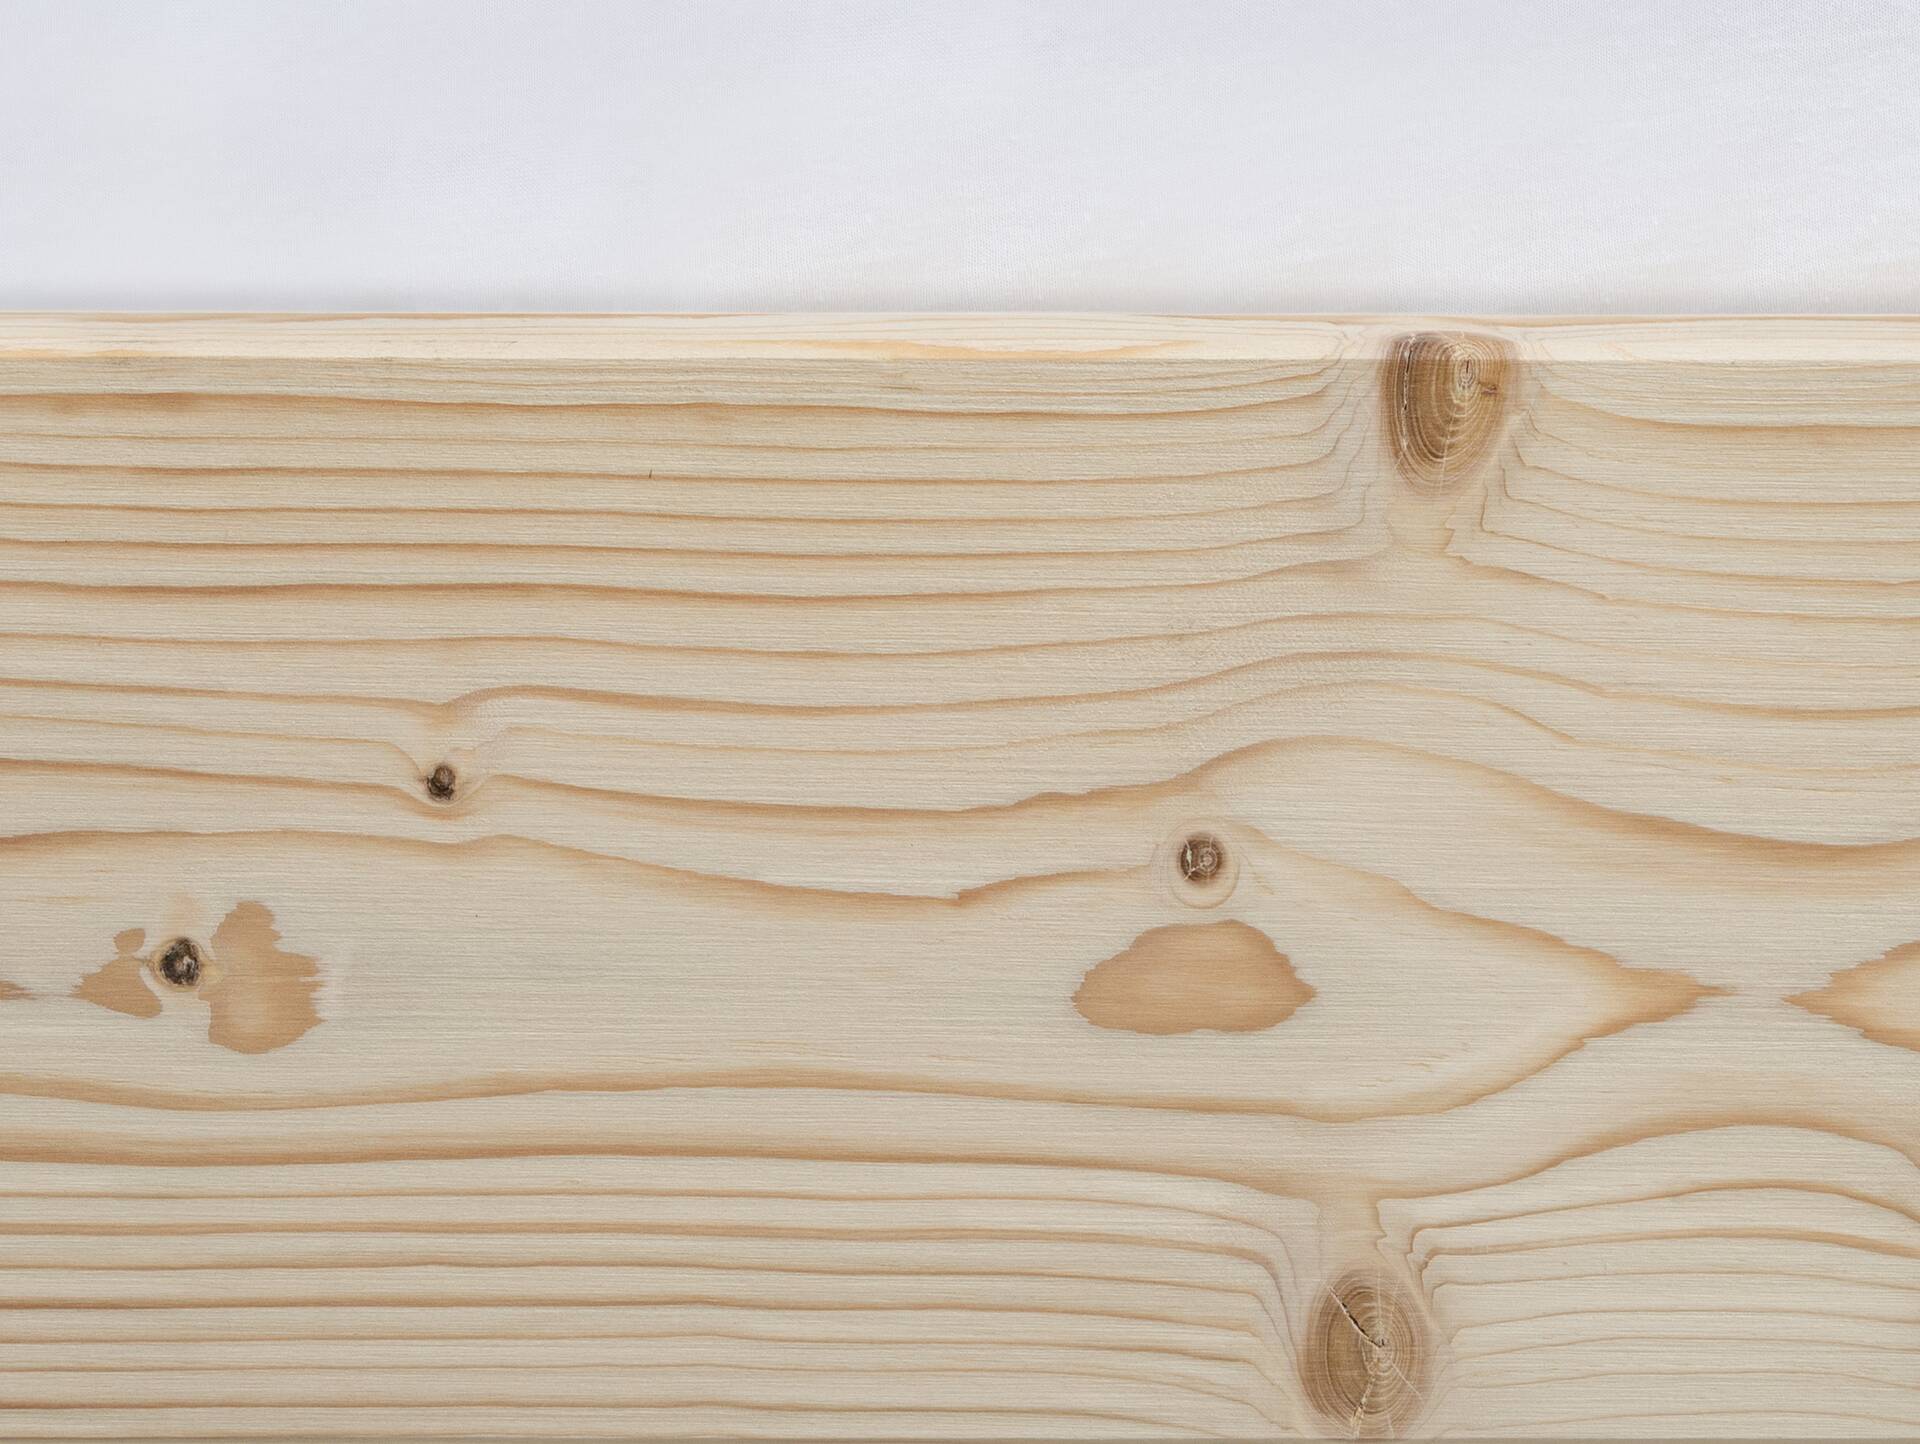 LUKY Kufenbett mit Polsterkopfteil, Material Massivholz, Fichte massiv, Kufen schwarz 160 x 220 cm | natur | Kunstleder Schwarz